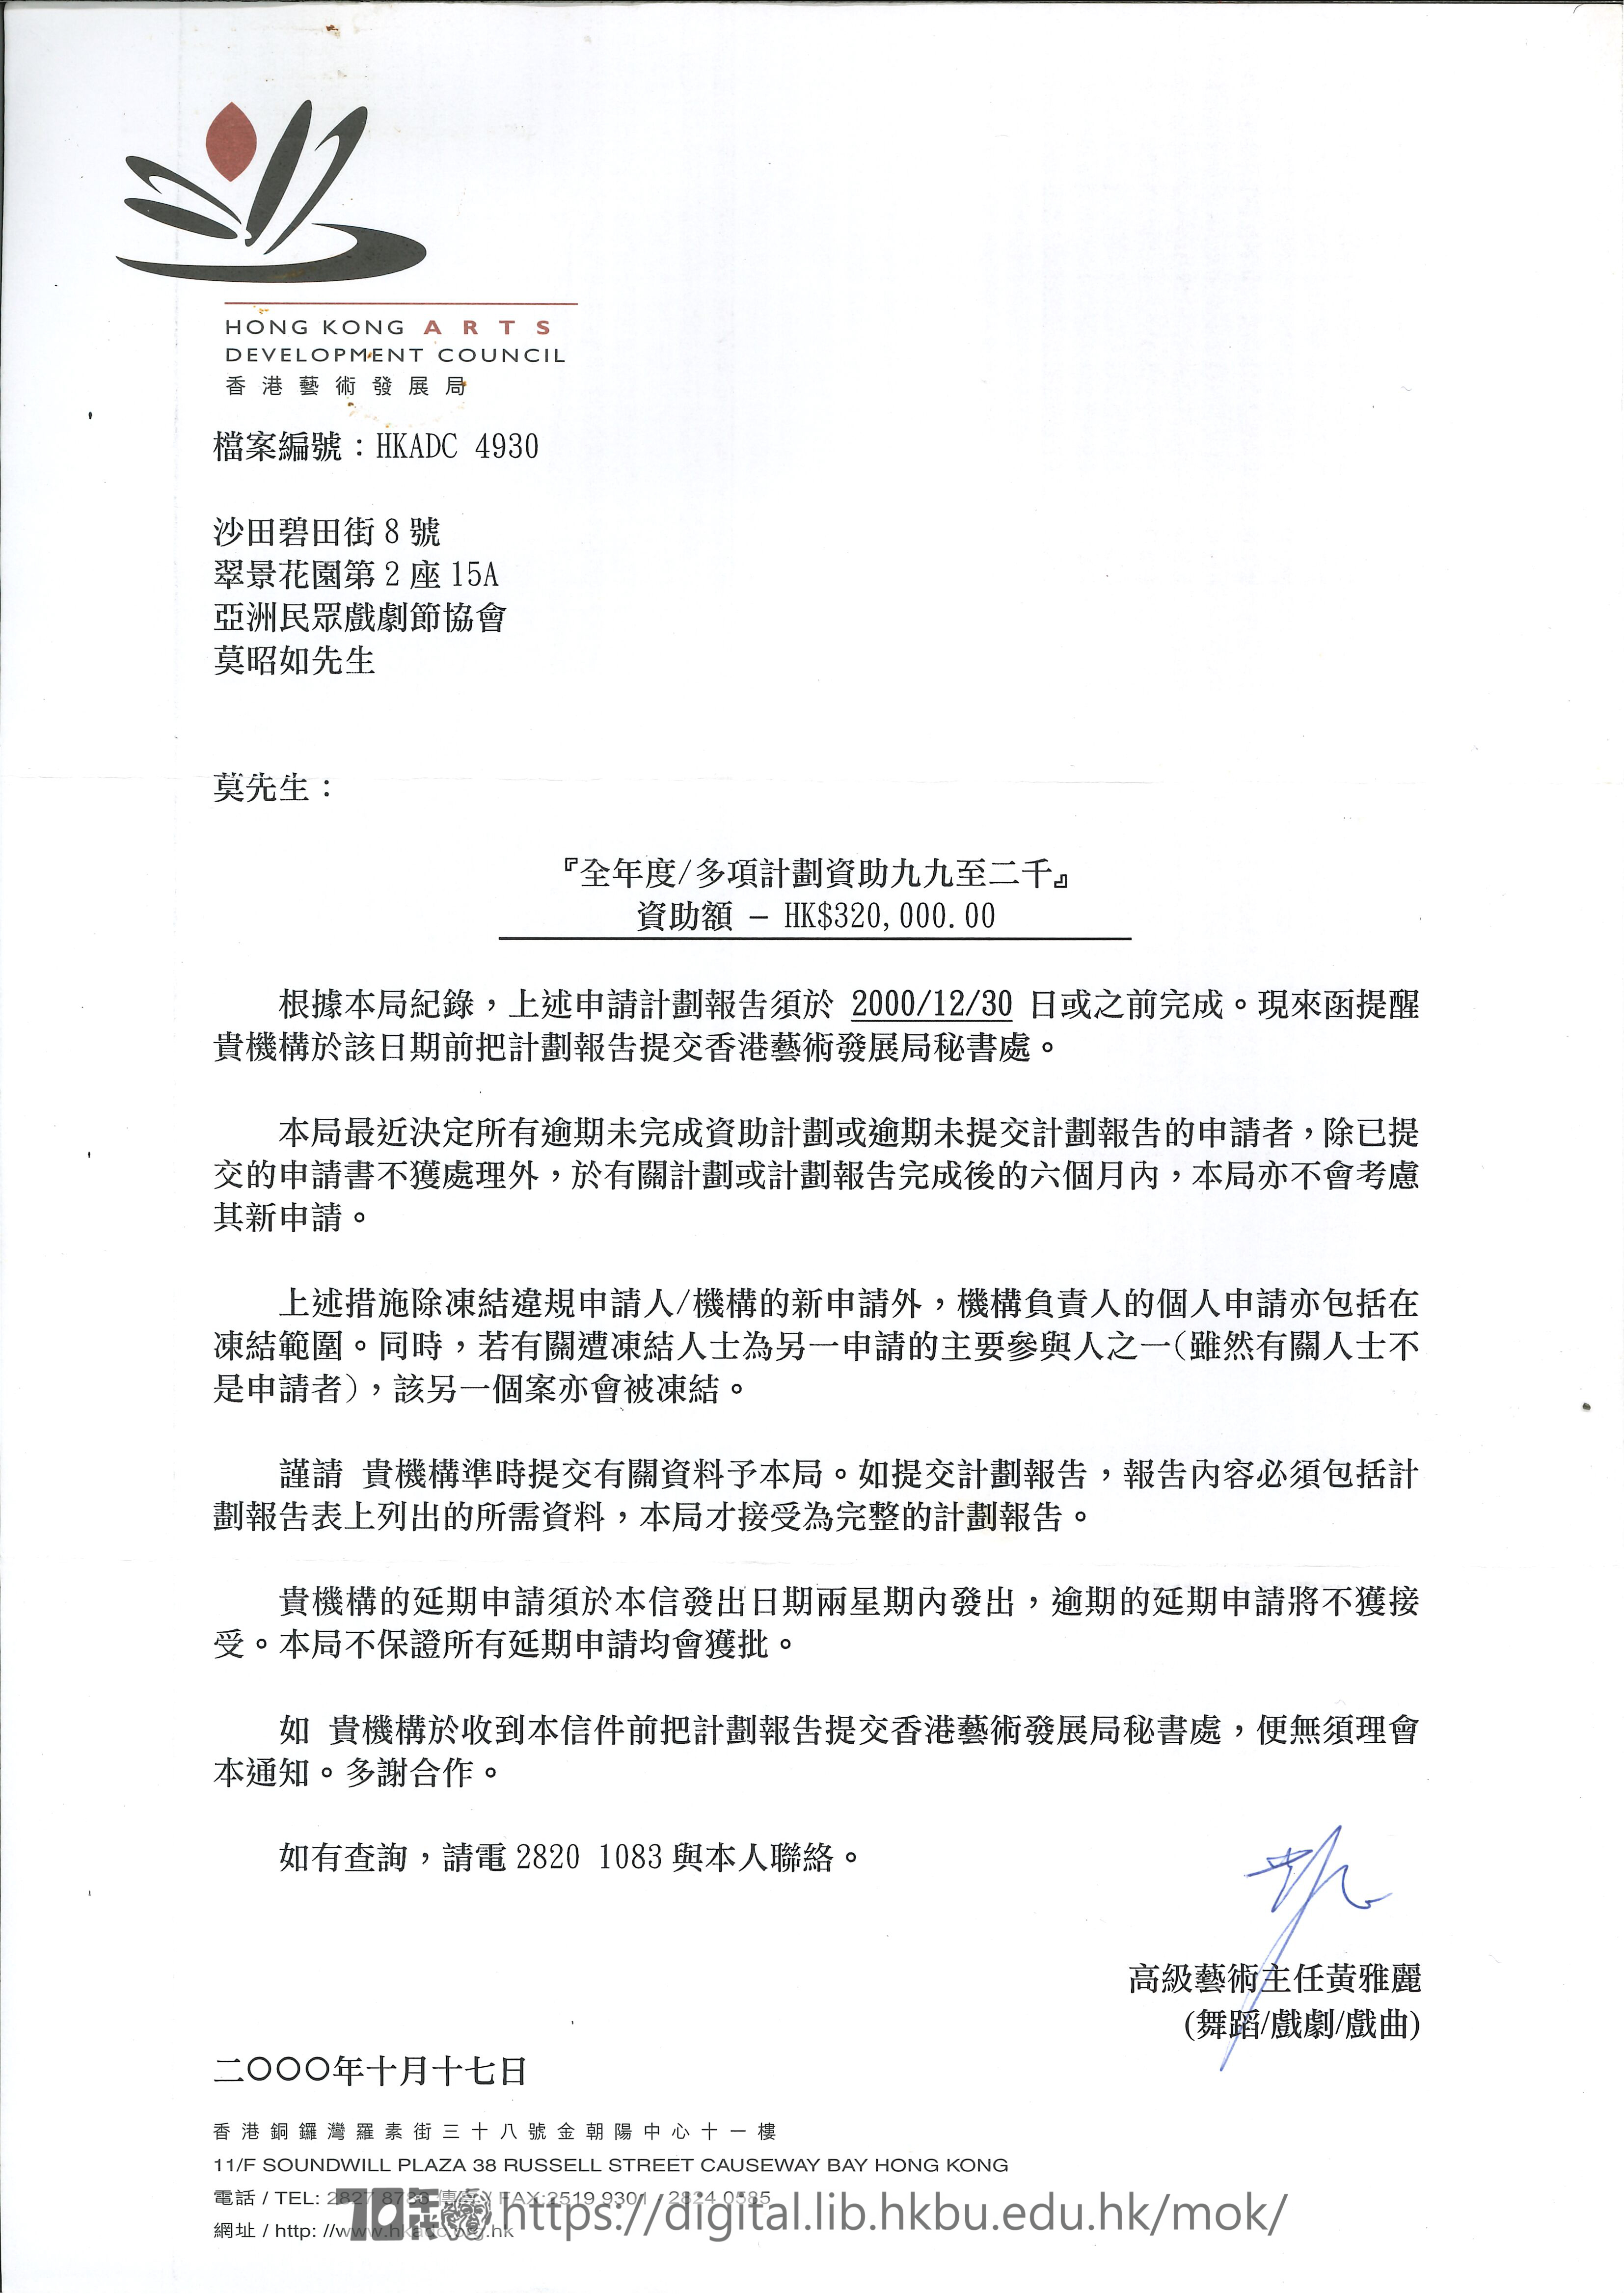   香港藝術發展局信函：全年度/多項計劃資助1999至2000  